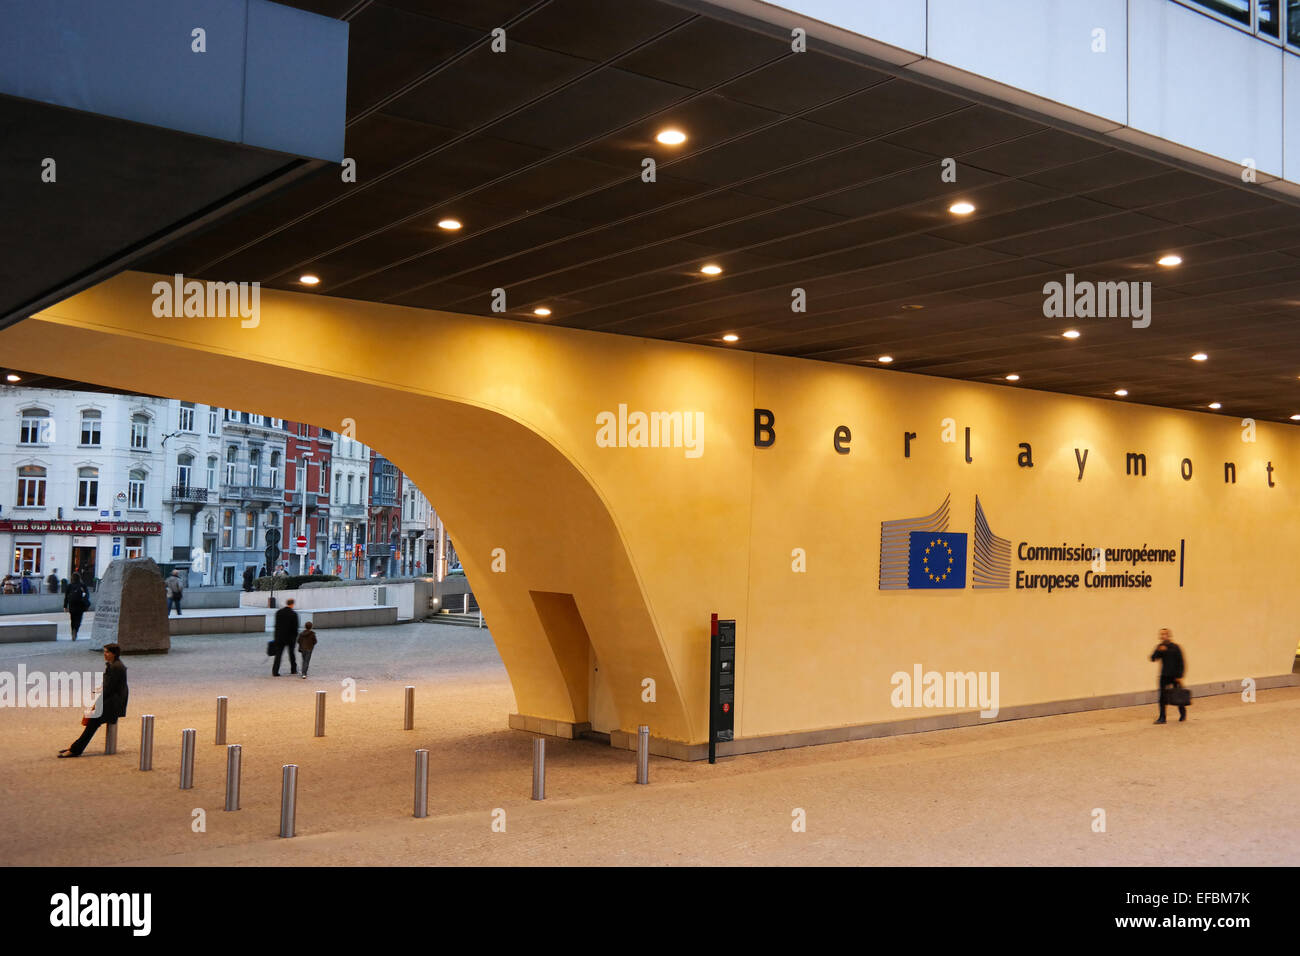 Bruselas, Bélgica - Octubre 2014: Gate en el edificio Berlaymont de la Comisión Europea durante el anochecer Foto de stock